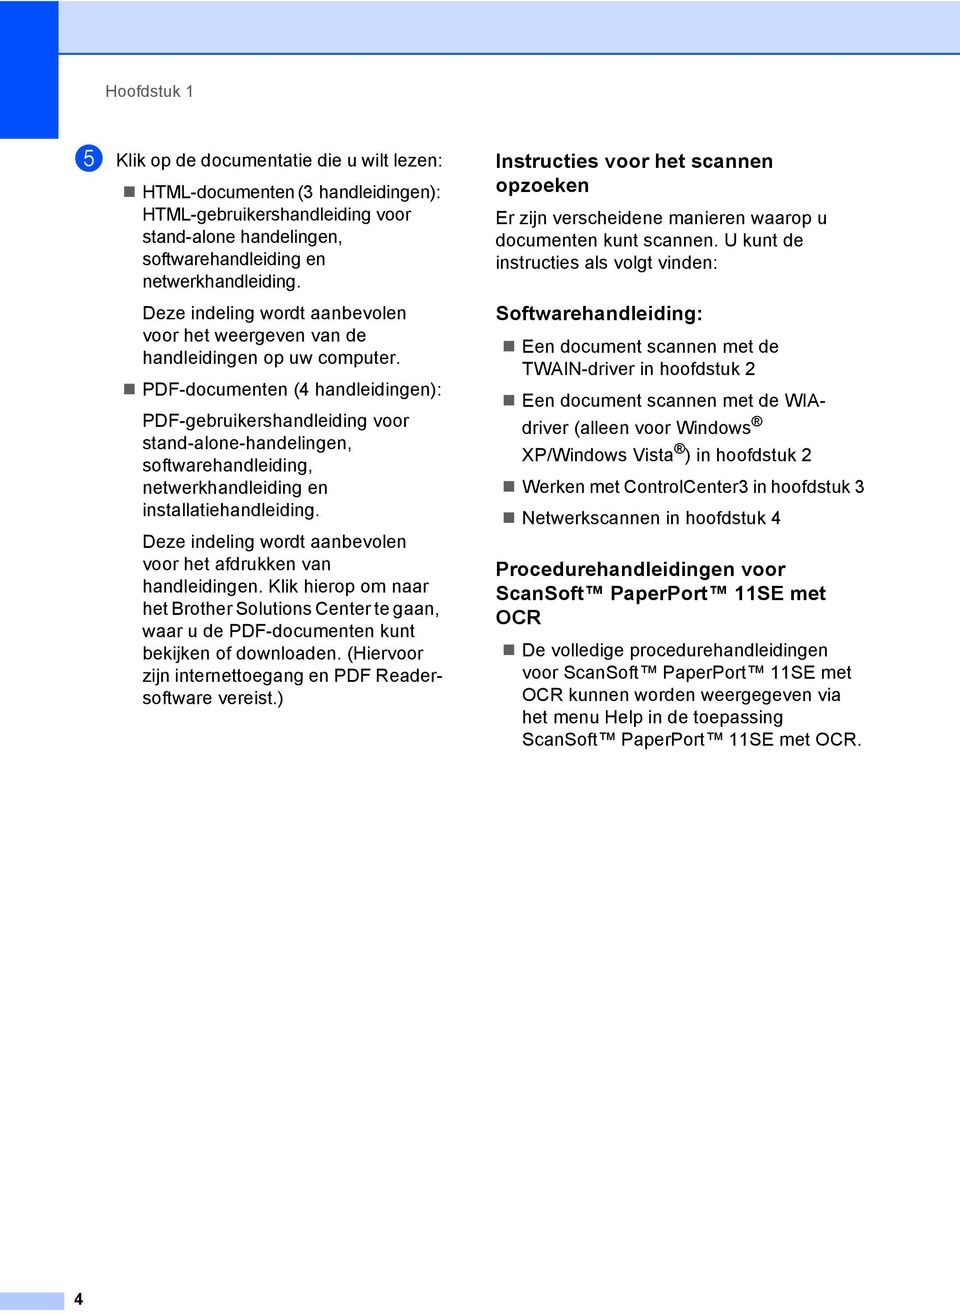 PDF-documenten (4 handleidingen): PDF-gebruikershandleiding voor stand-alone-handelingen, softwarehandleiding, netwerkhandleiding en installatiehandleiding.